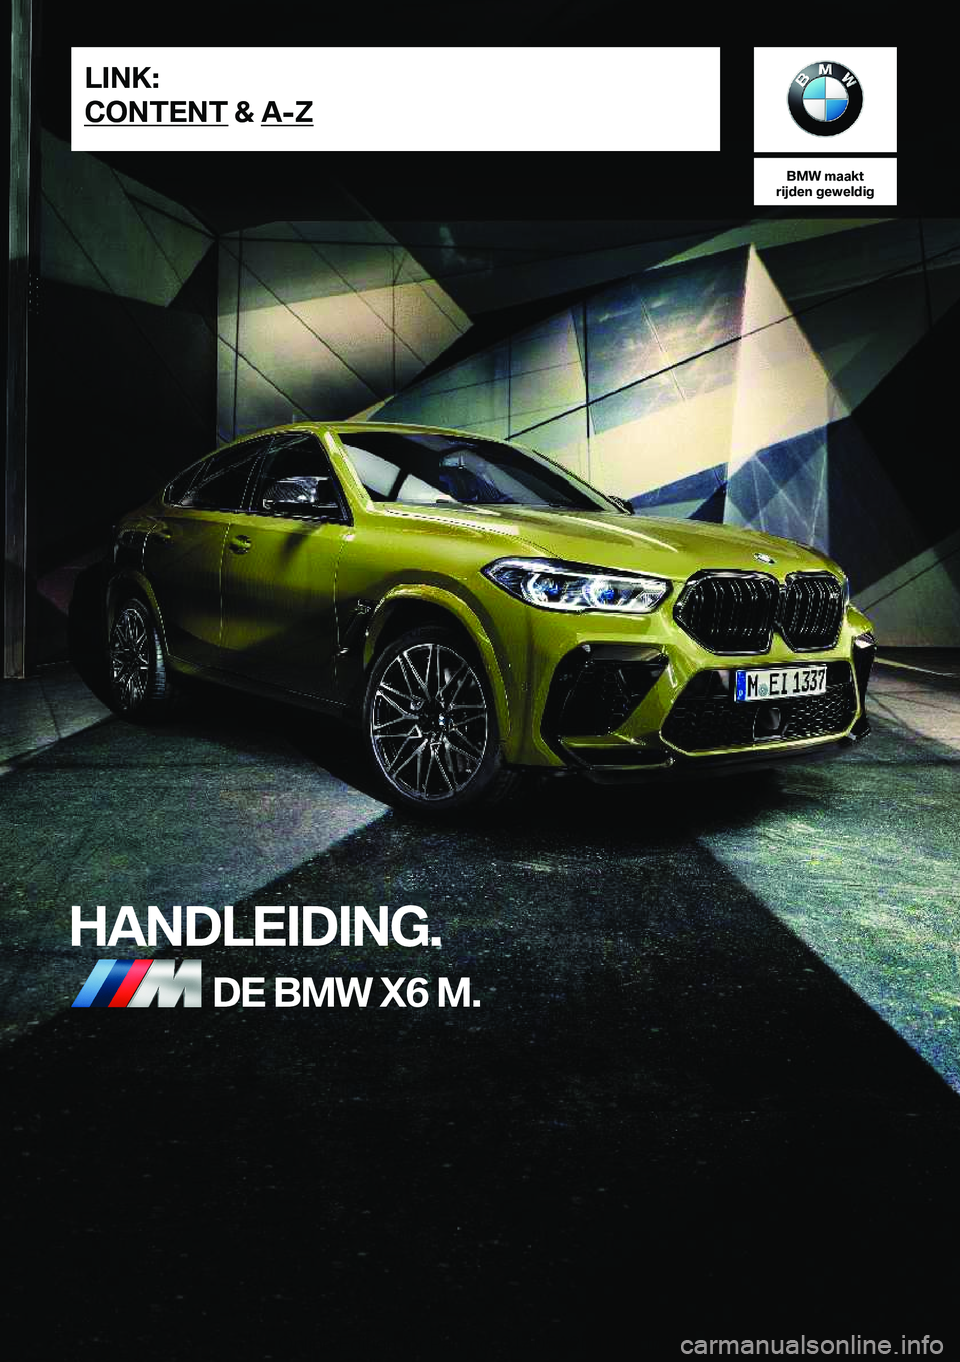 BMW X6 M 2021  Instructieboekjes (in Dutch) �B�M�W��m�a�a�k�t
�r�i�j�d�e�n��g�e�w�e�l�d�i�g
�H�A�N�D�L�E�I�D�I�N�G�.�D�E��B�M�W��X�6��M�.�L�I�N�K�:
�C�O�N�T�E�N�T��&��A�-�Z�O�n�l�i�n�e��E�d�i�t�i�o�n��f�o�r��P�a�r�t��n�o�.��0�1�4�0�